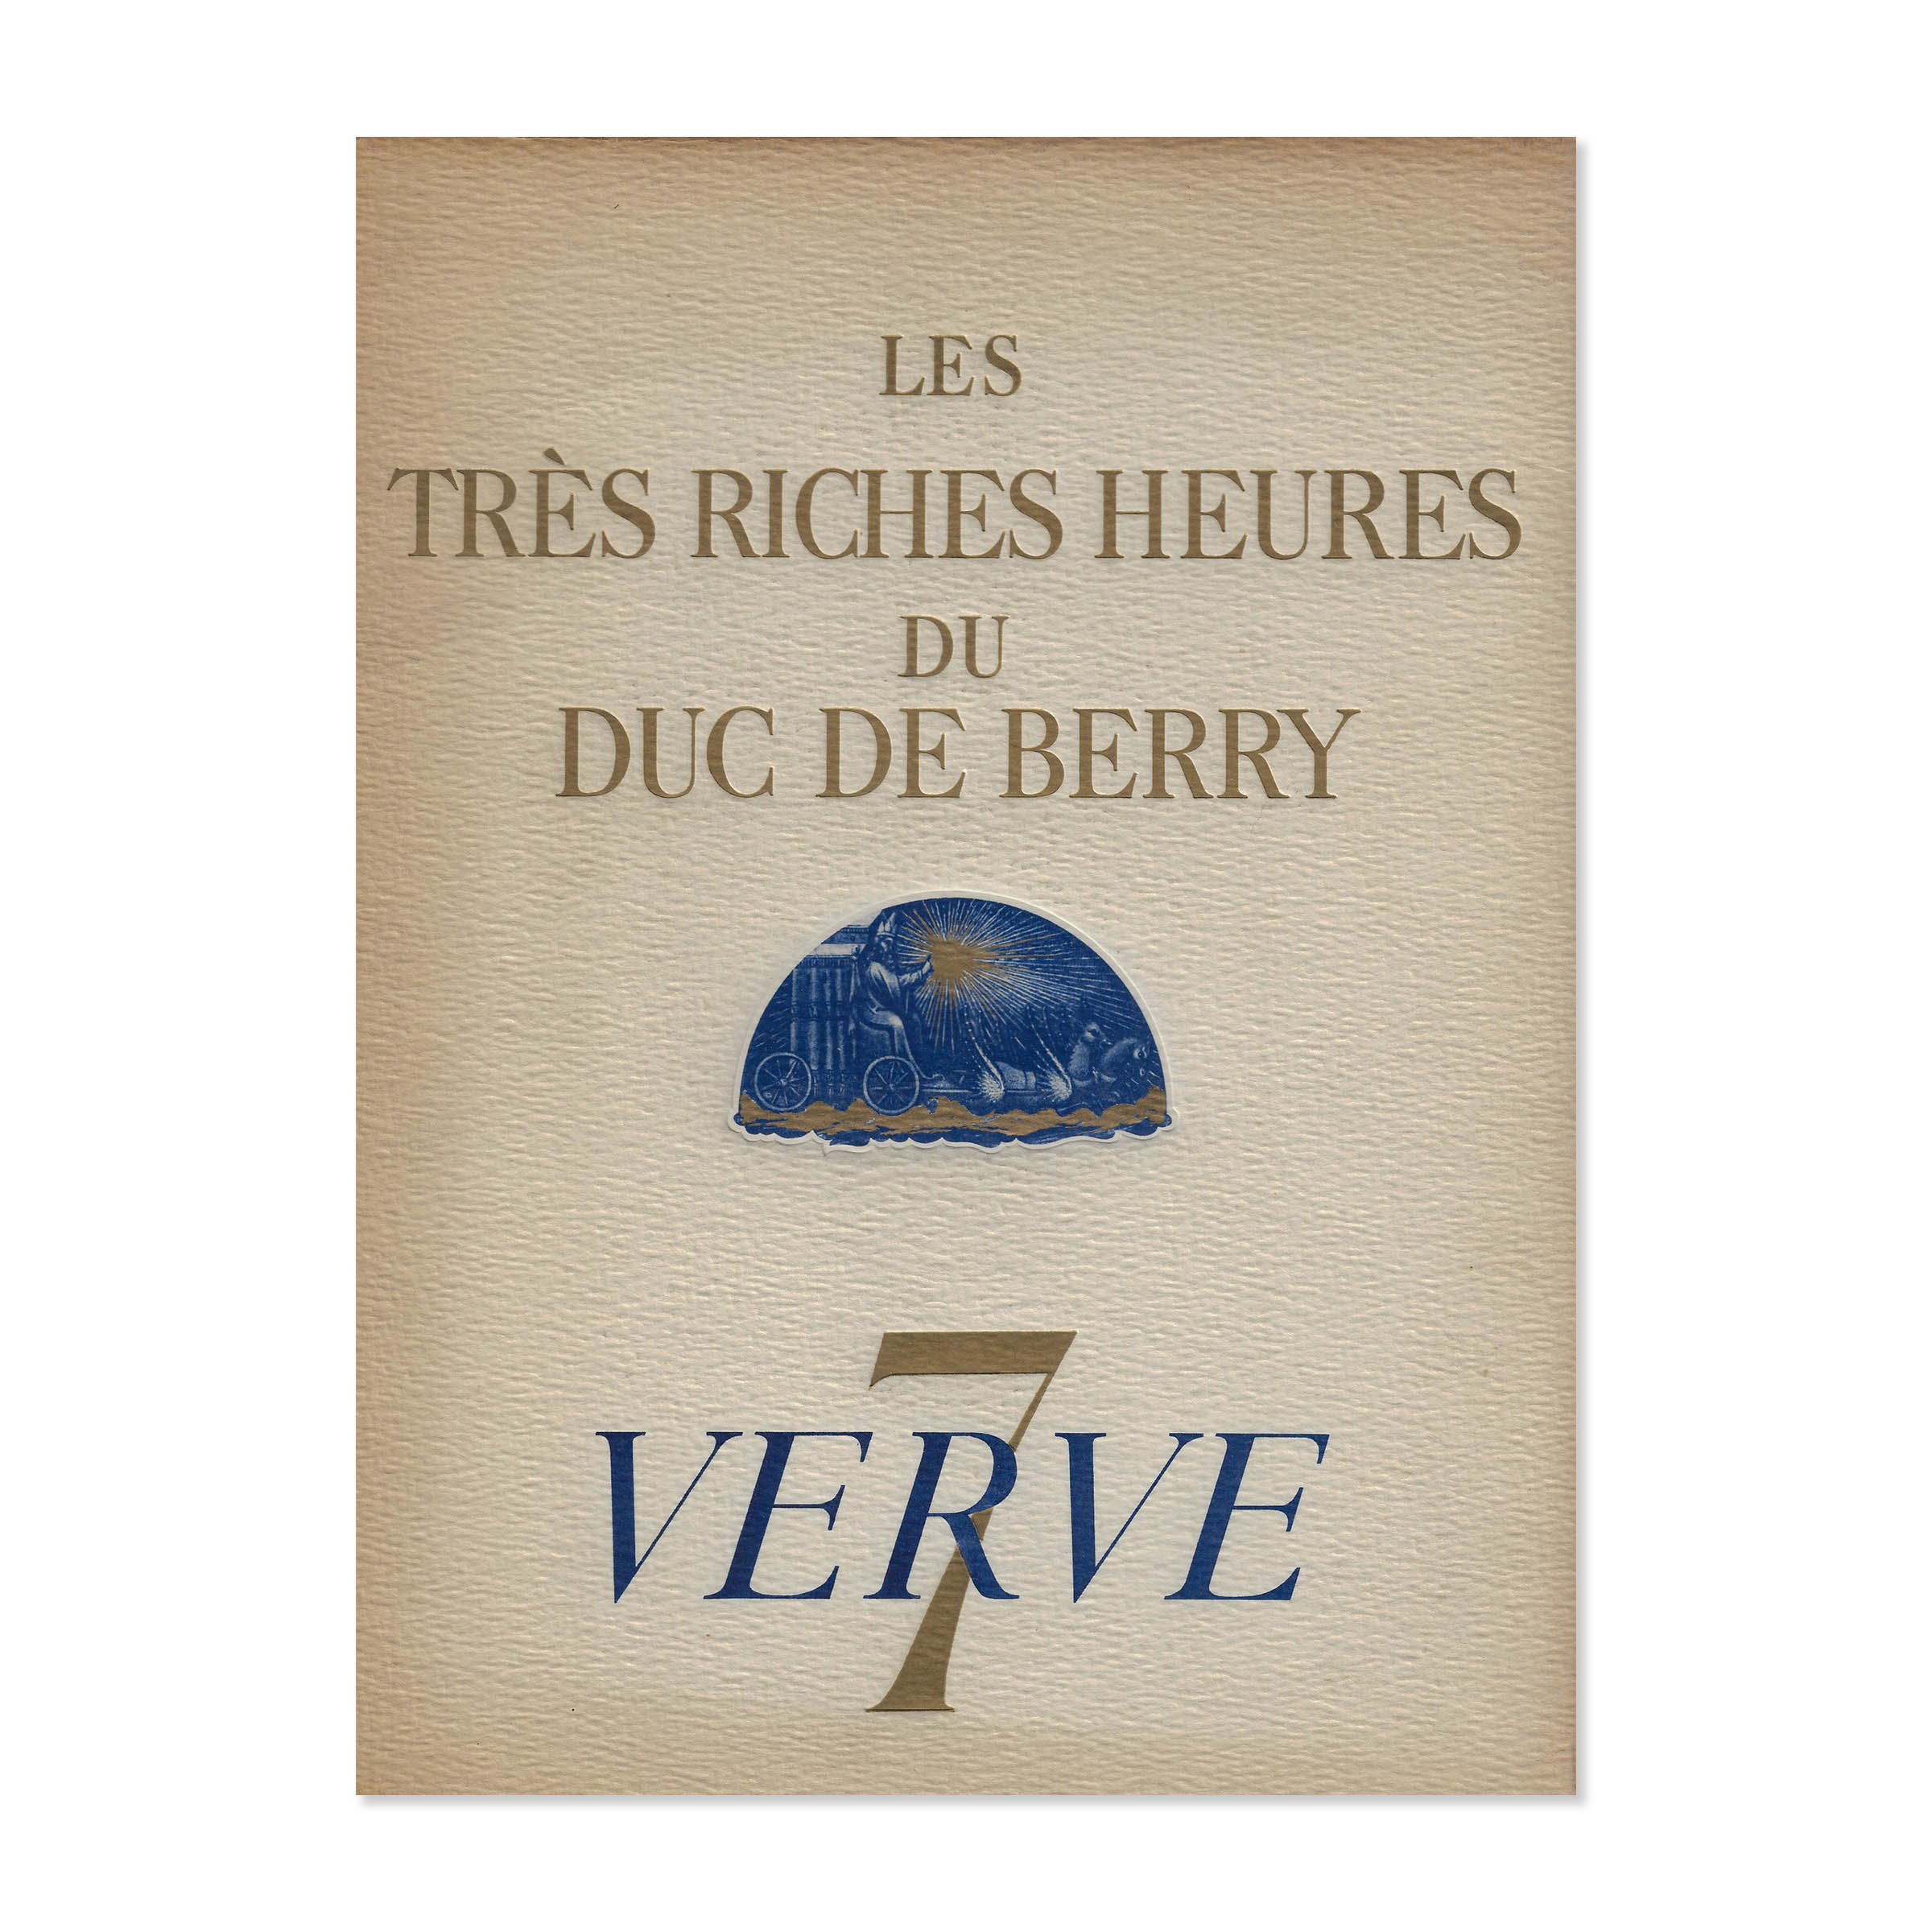 Verve 7. Les très riches heures du Duc de Berry. Cover view